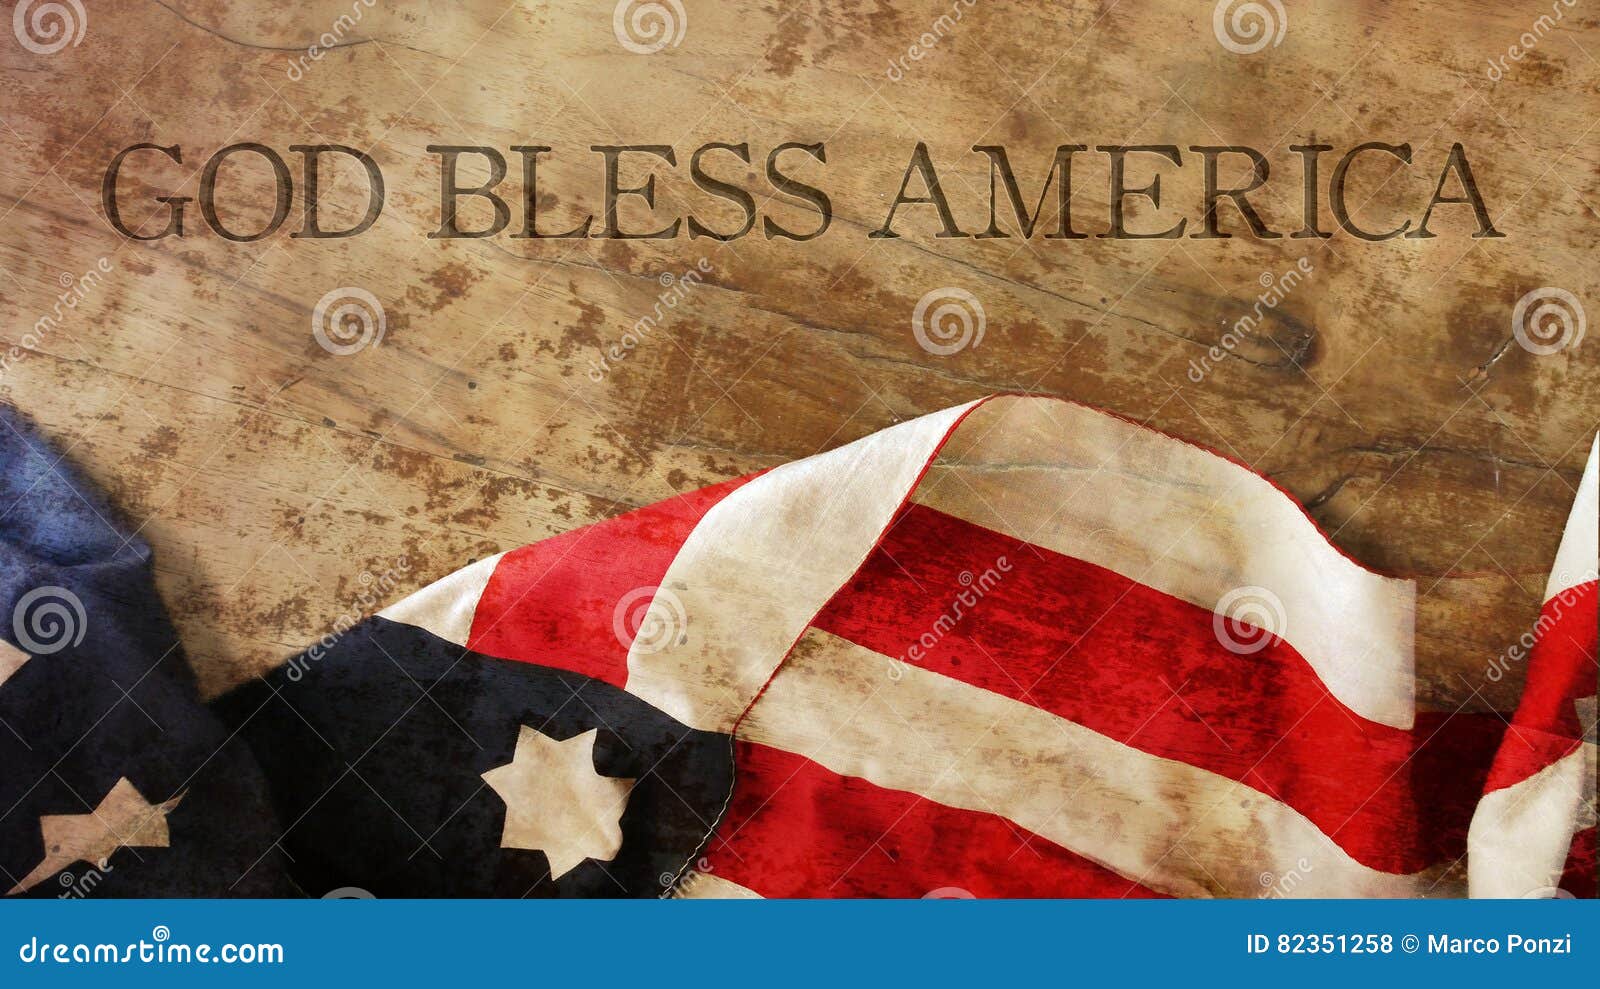 god bless america. flag